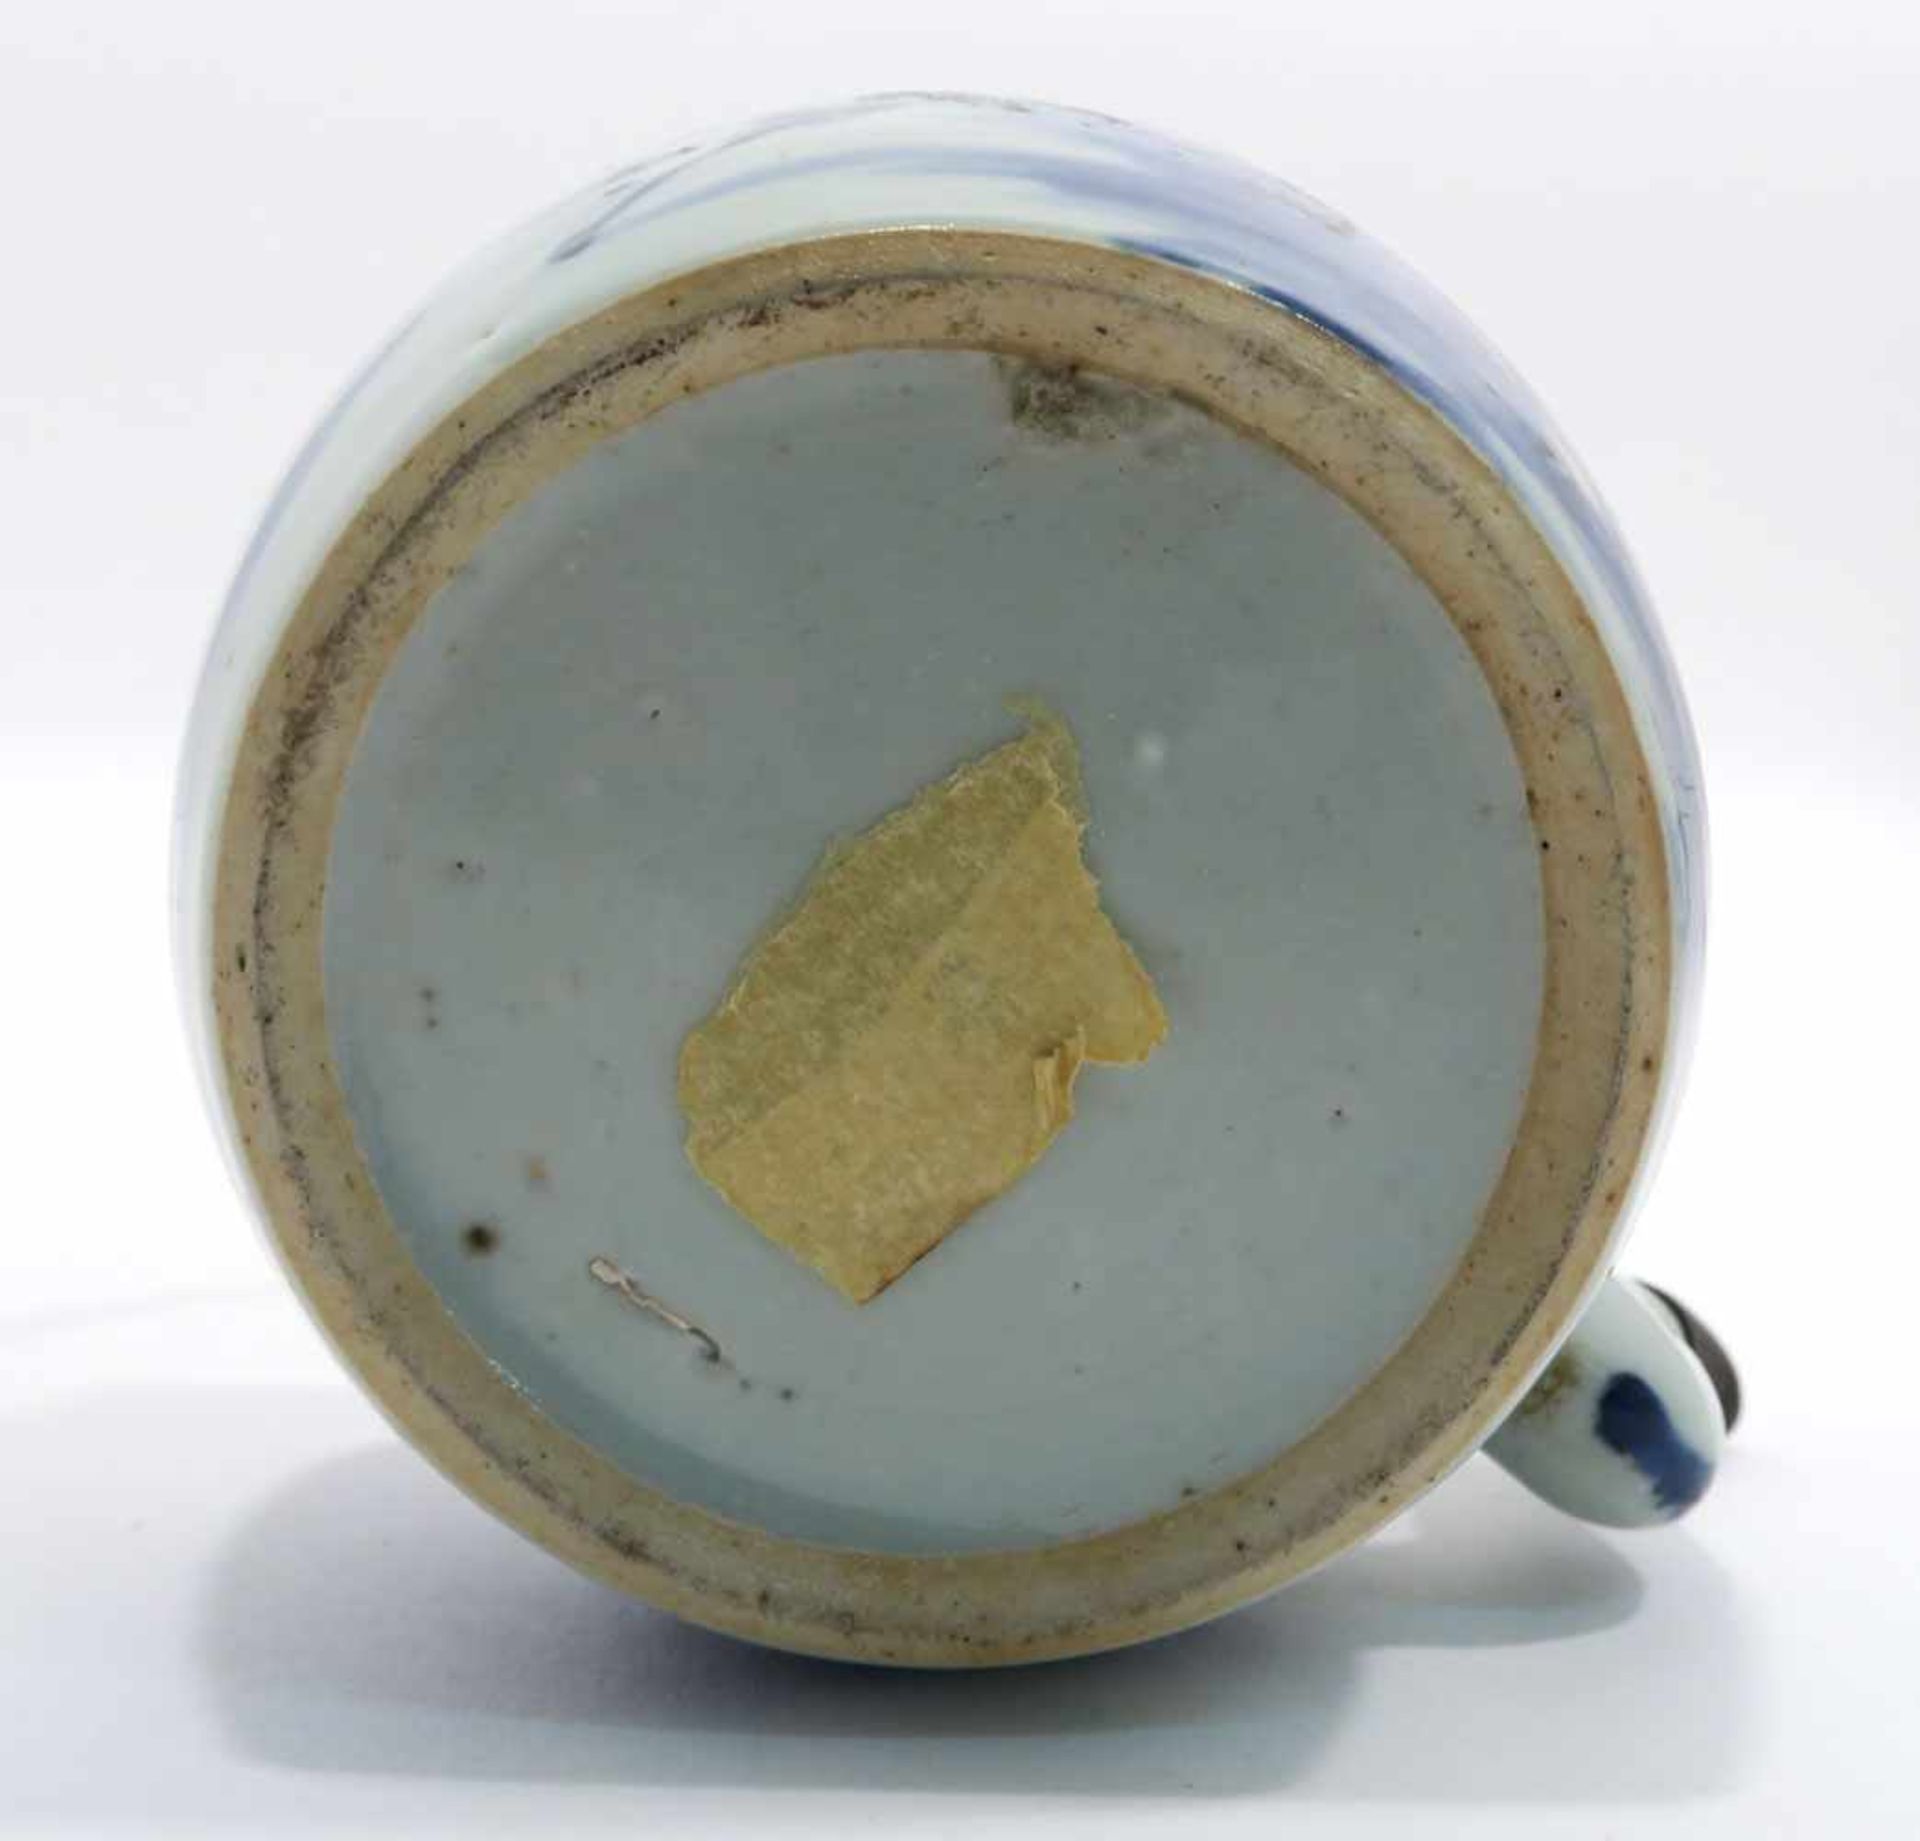 Zwei TeekannenChina. Porzellan. Floraler bzw. figürlicher Blaudekor. Metallhenkel. H. 11,5 cm bzw. - Bild 15 aus 15